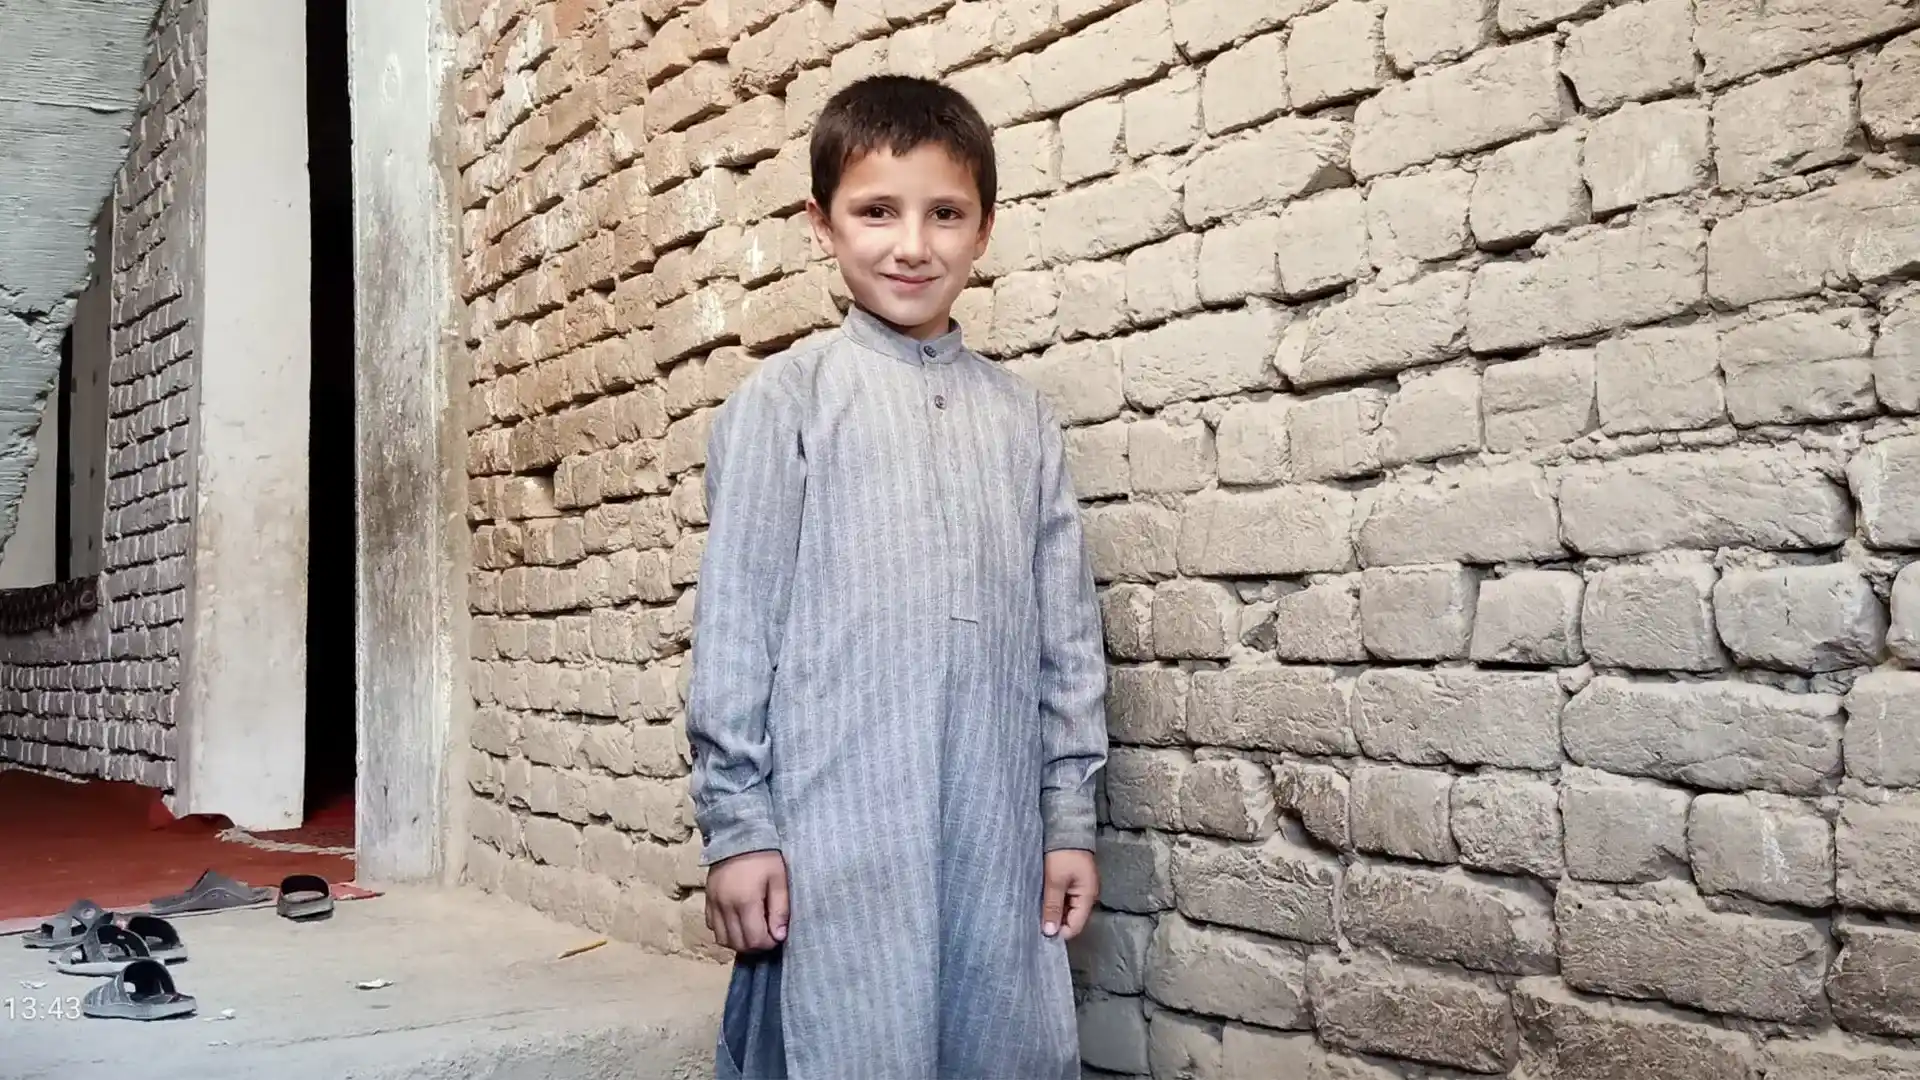 Sayma's (a widowed women in Afghanistan) son, Abdul waris 